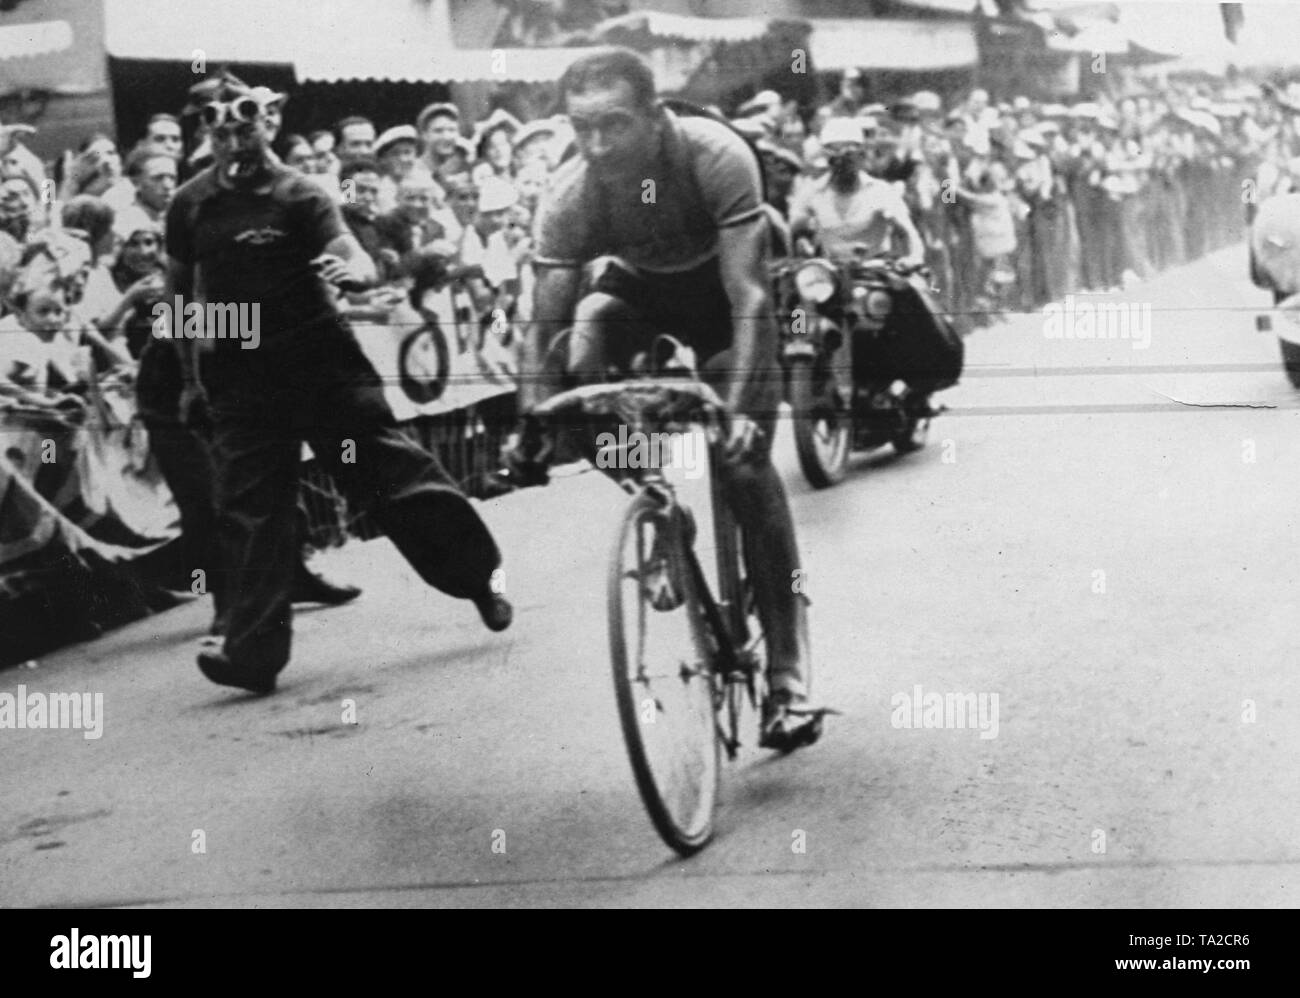 Roger Lapebie cycliste français sur la 9e étape du Tour de France 1937 à Digne-les-Bains. Il gagne l'étape et du Tour de France. Un spectateur fonctionne à côté du cycliste. Banque D'Images